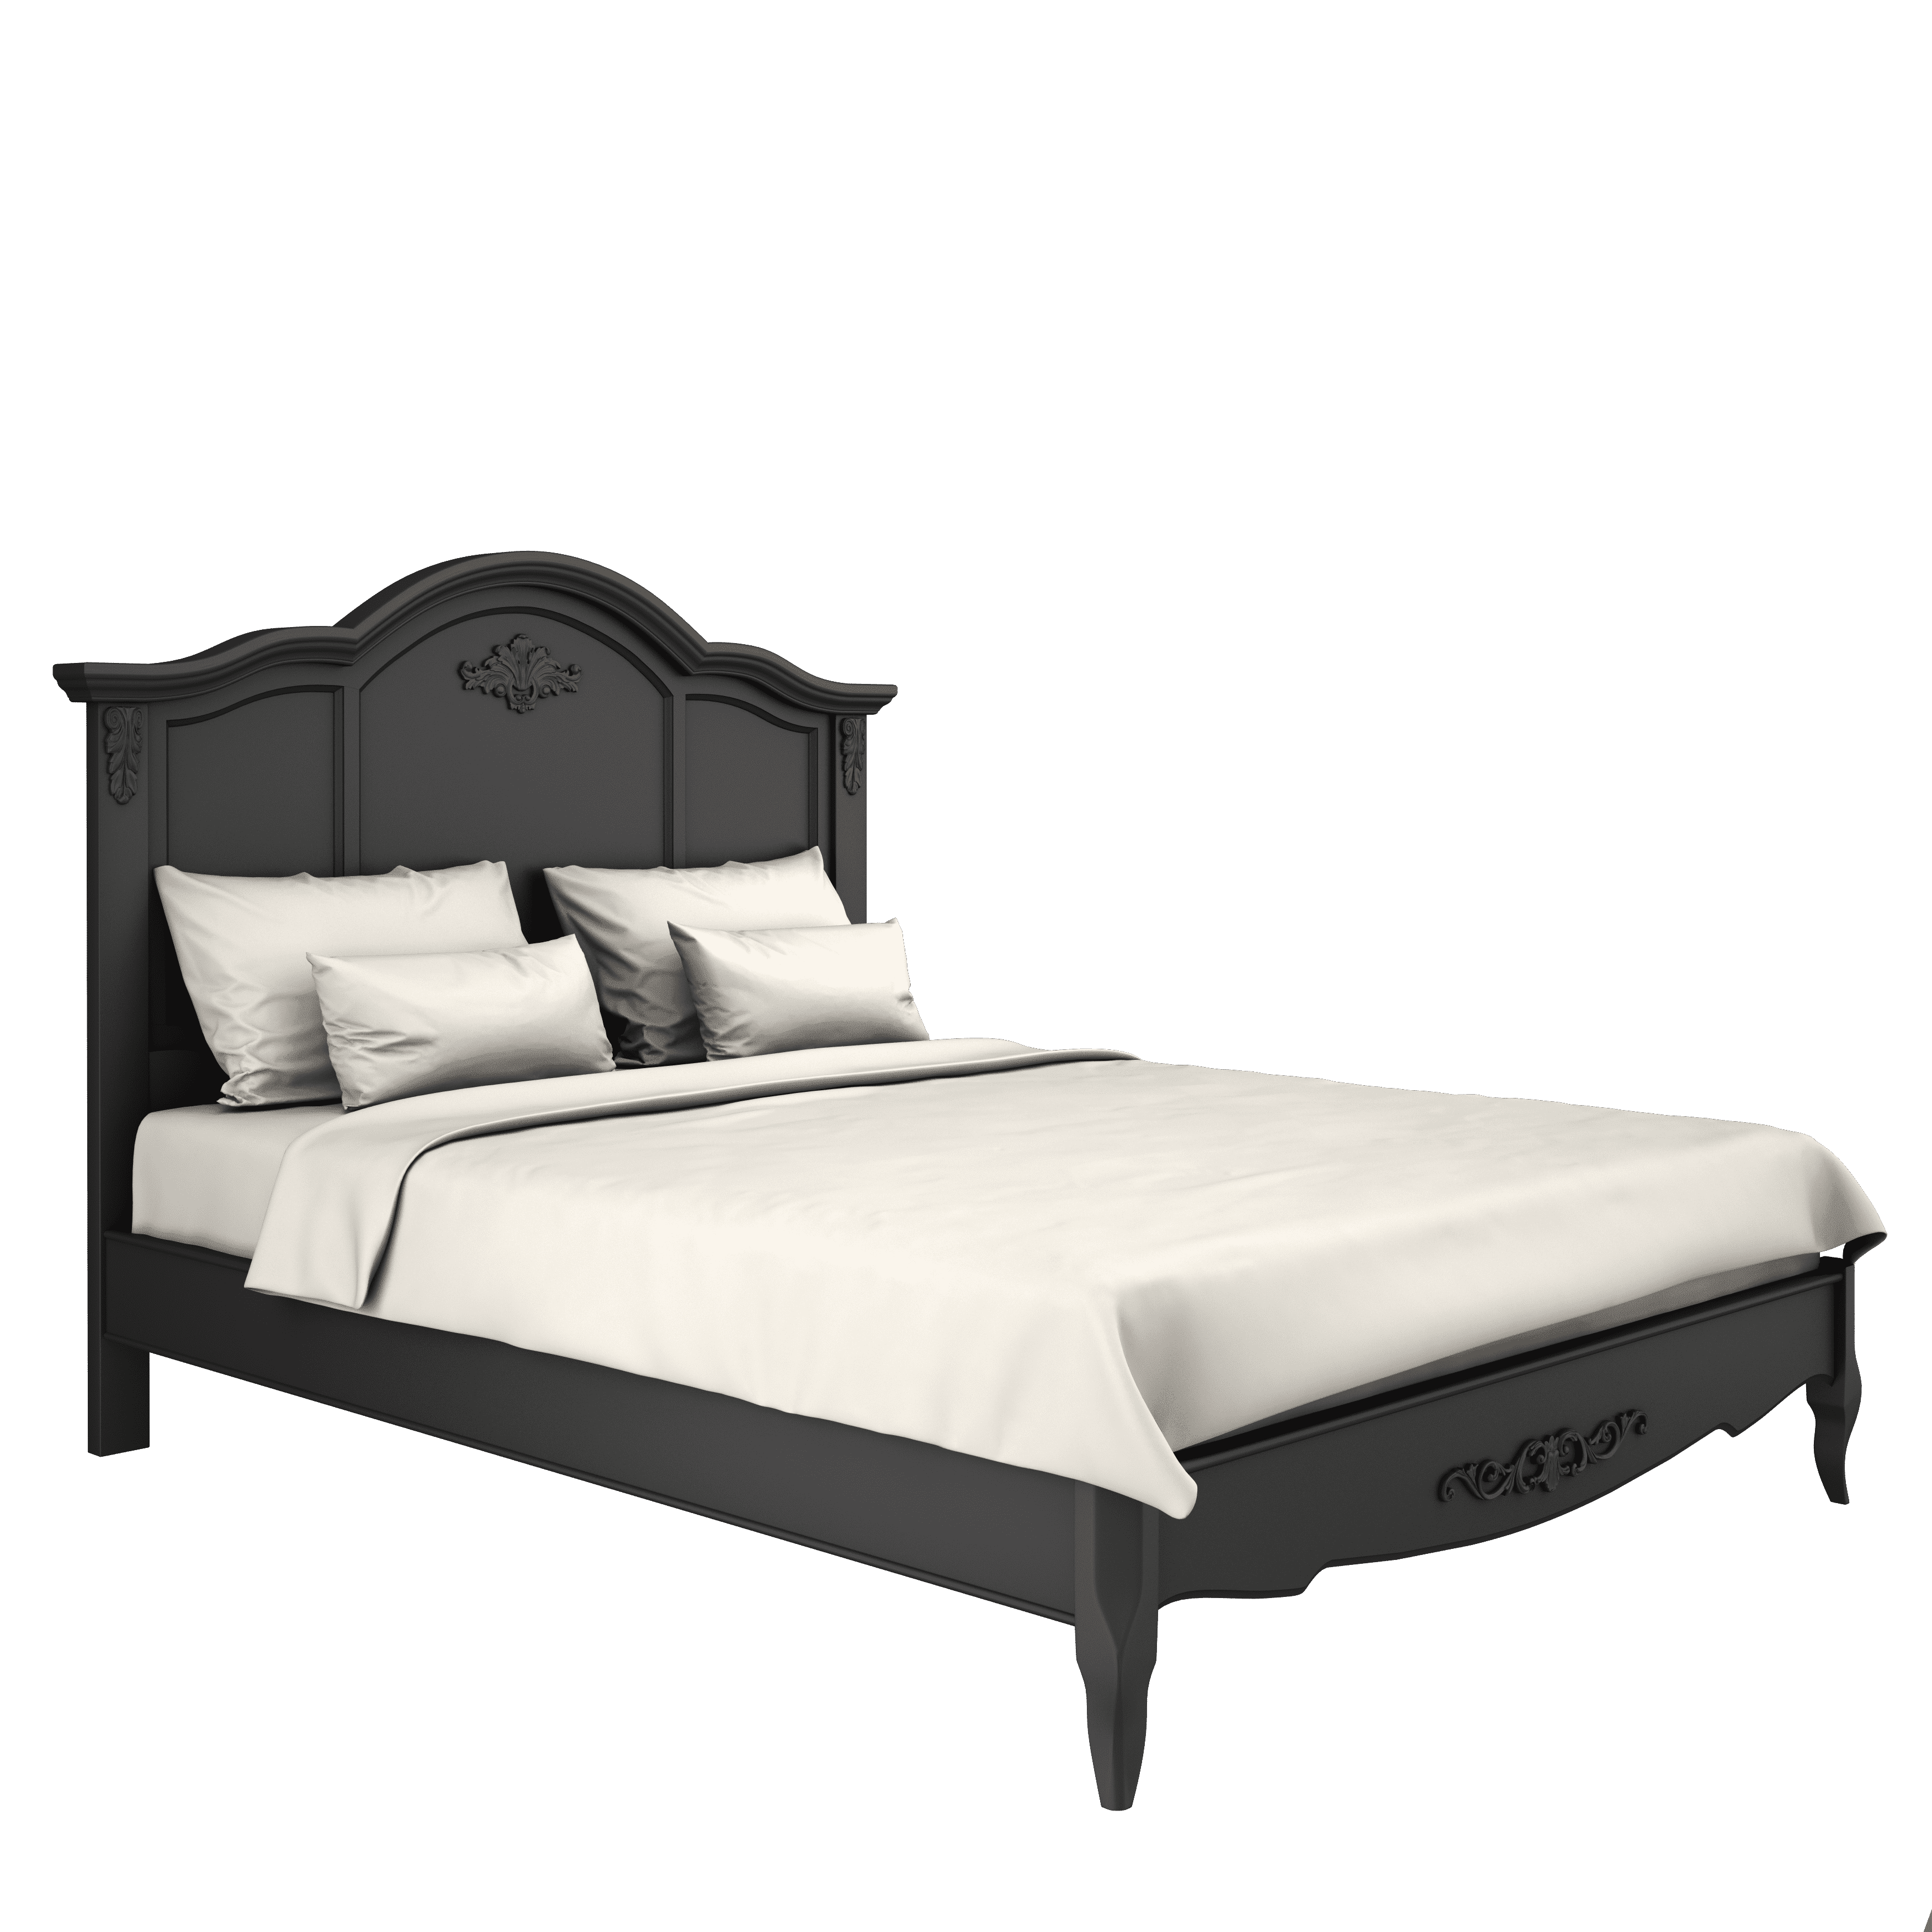 Кровать Aletan Provence, полуторная, 140x200 см, цвет: черный (B204BL)B204BL